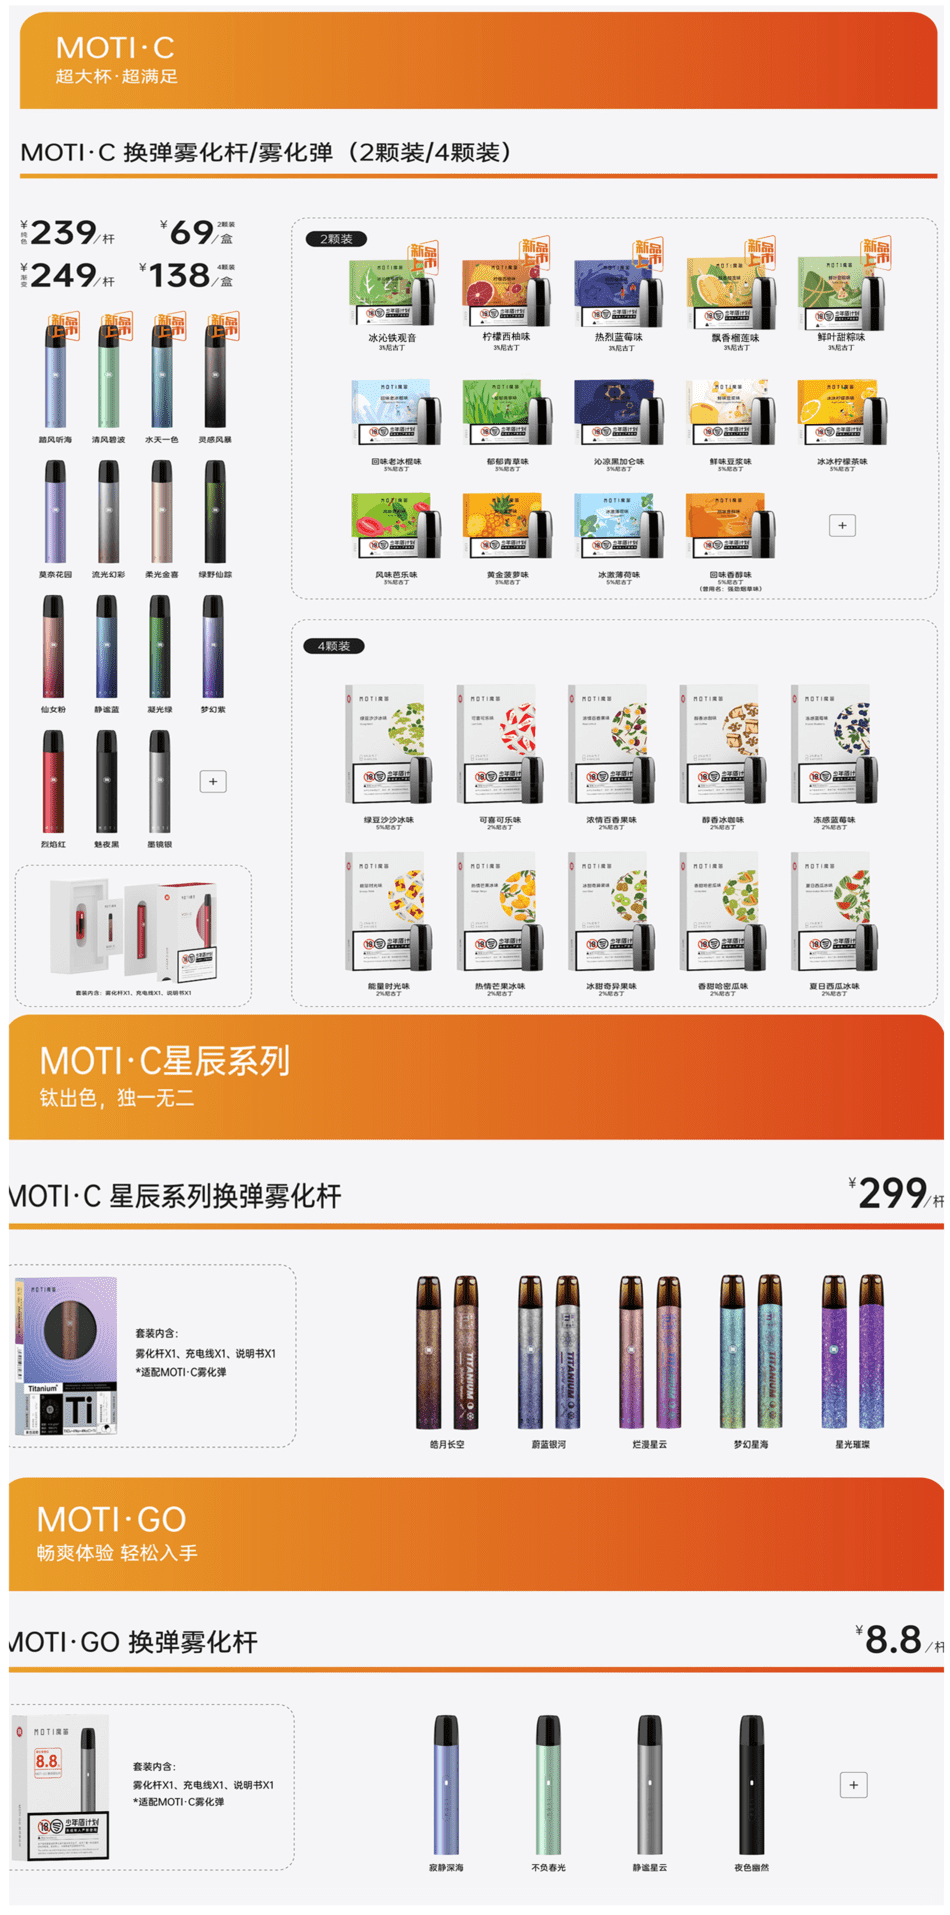 魔笛电子烟官方售价是多少钱？哪里能买到更便宜的魔笛产品？